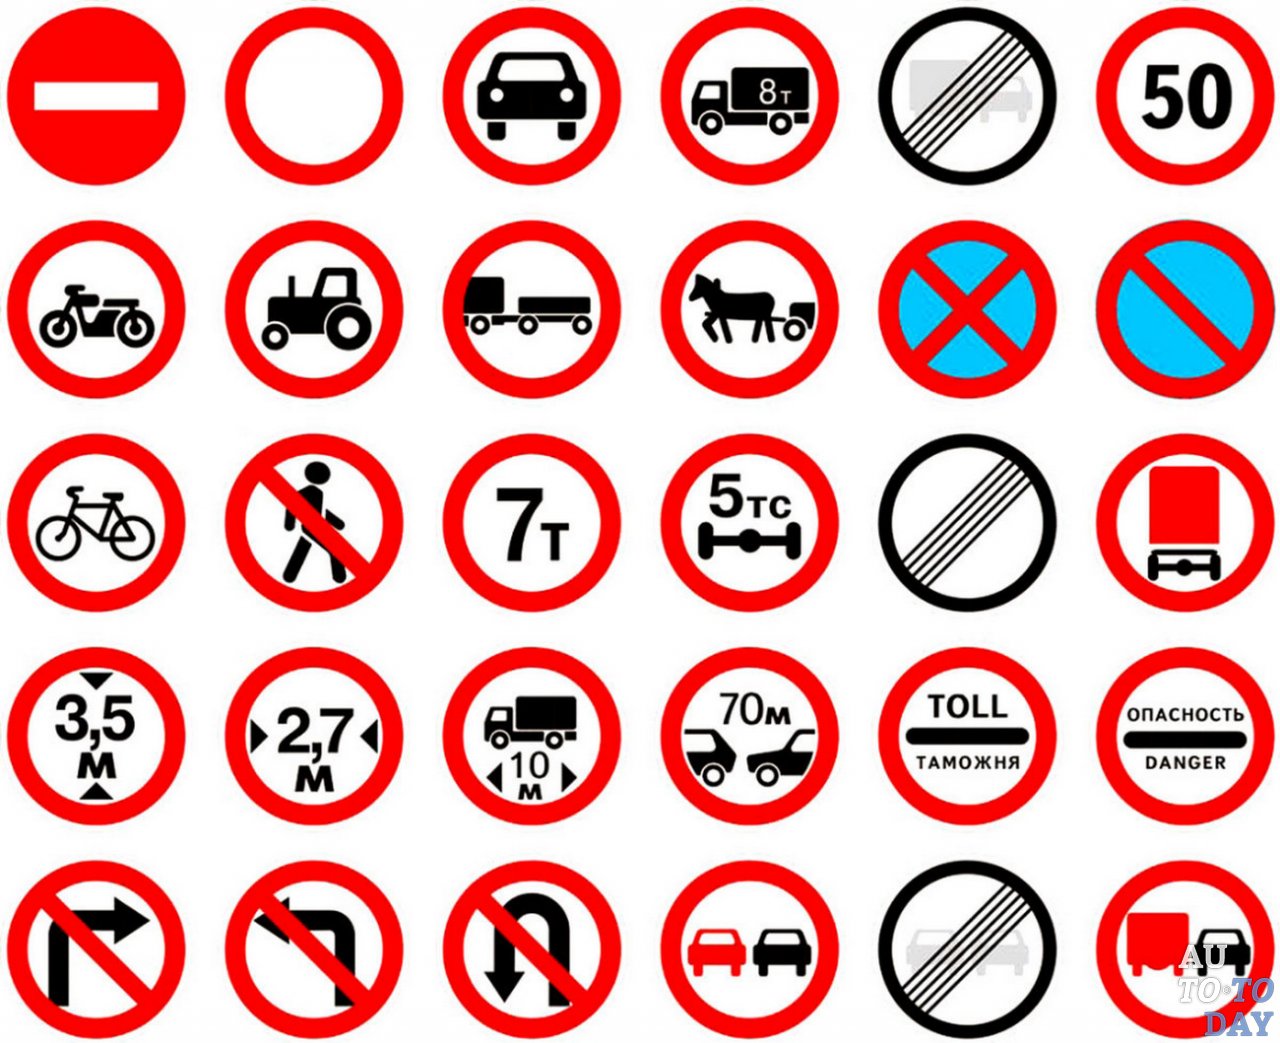 Знаки дорожного движения с пояснениями и картинками для водителей грузовиков